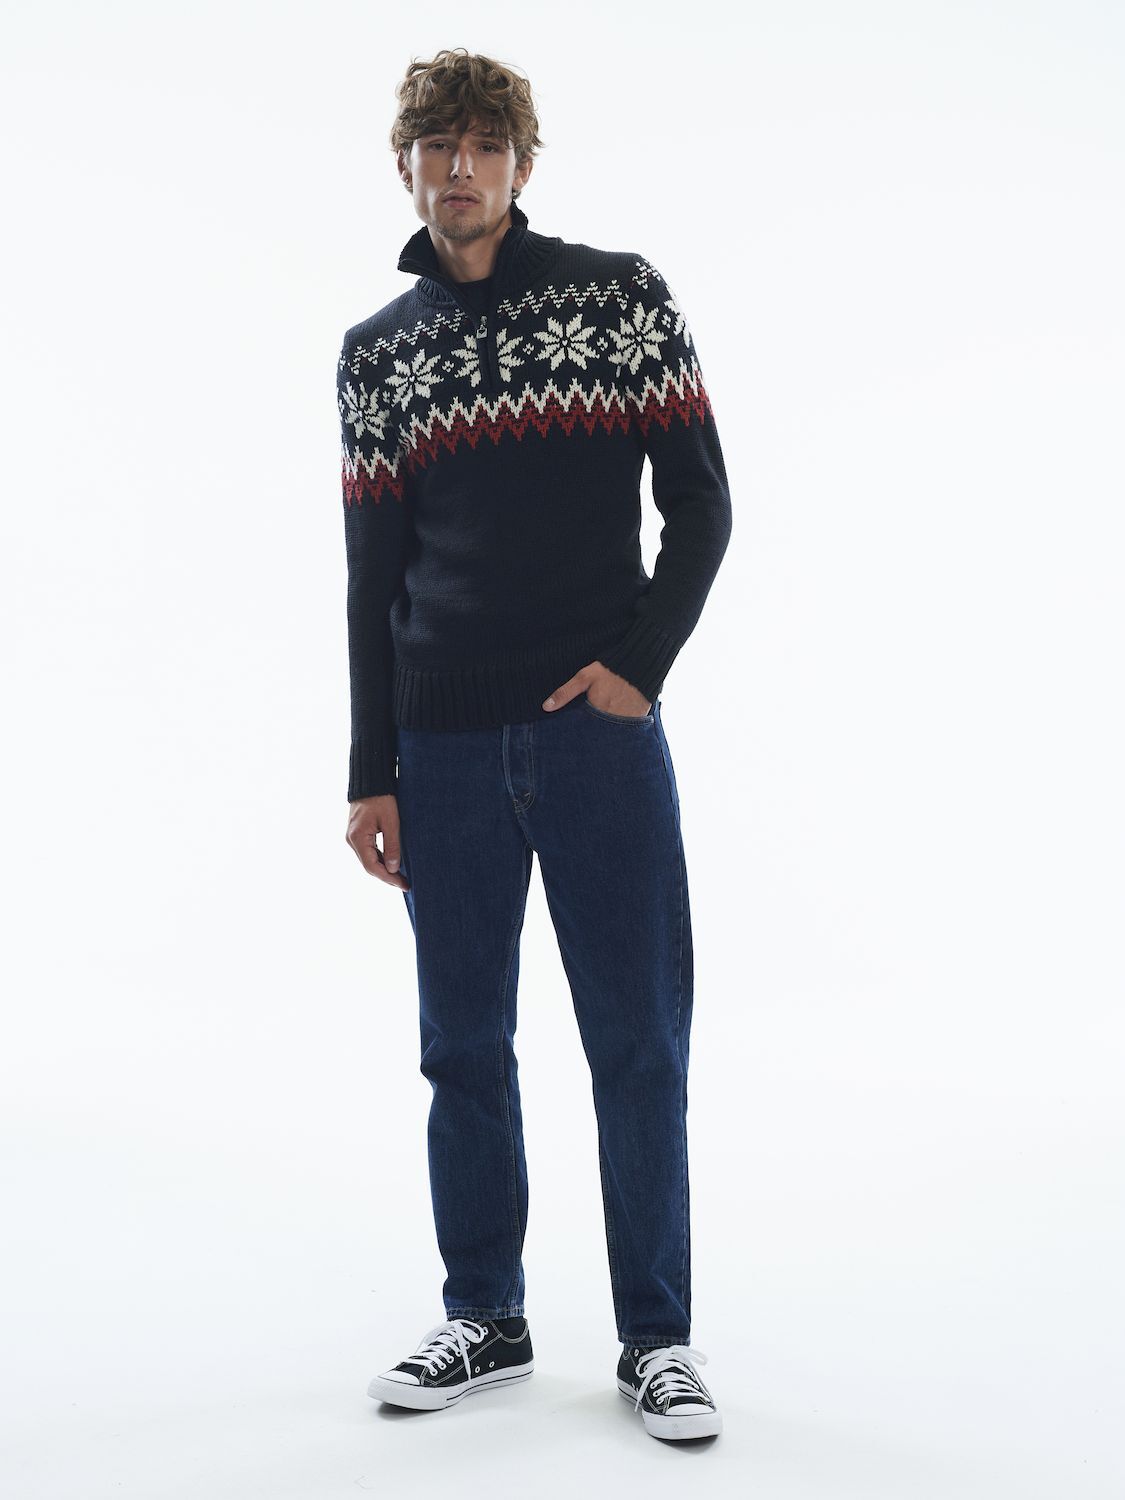 Dale of Norway Myking Sweater  - Pullover - Herren